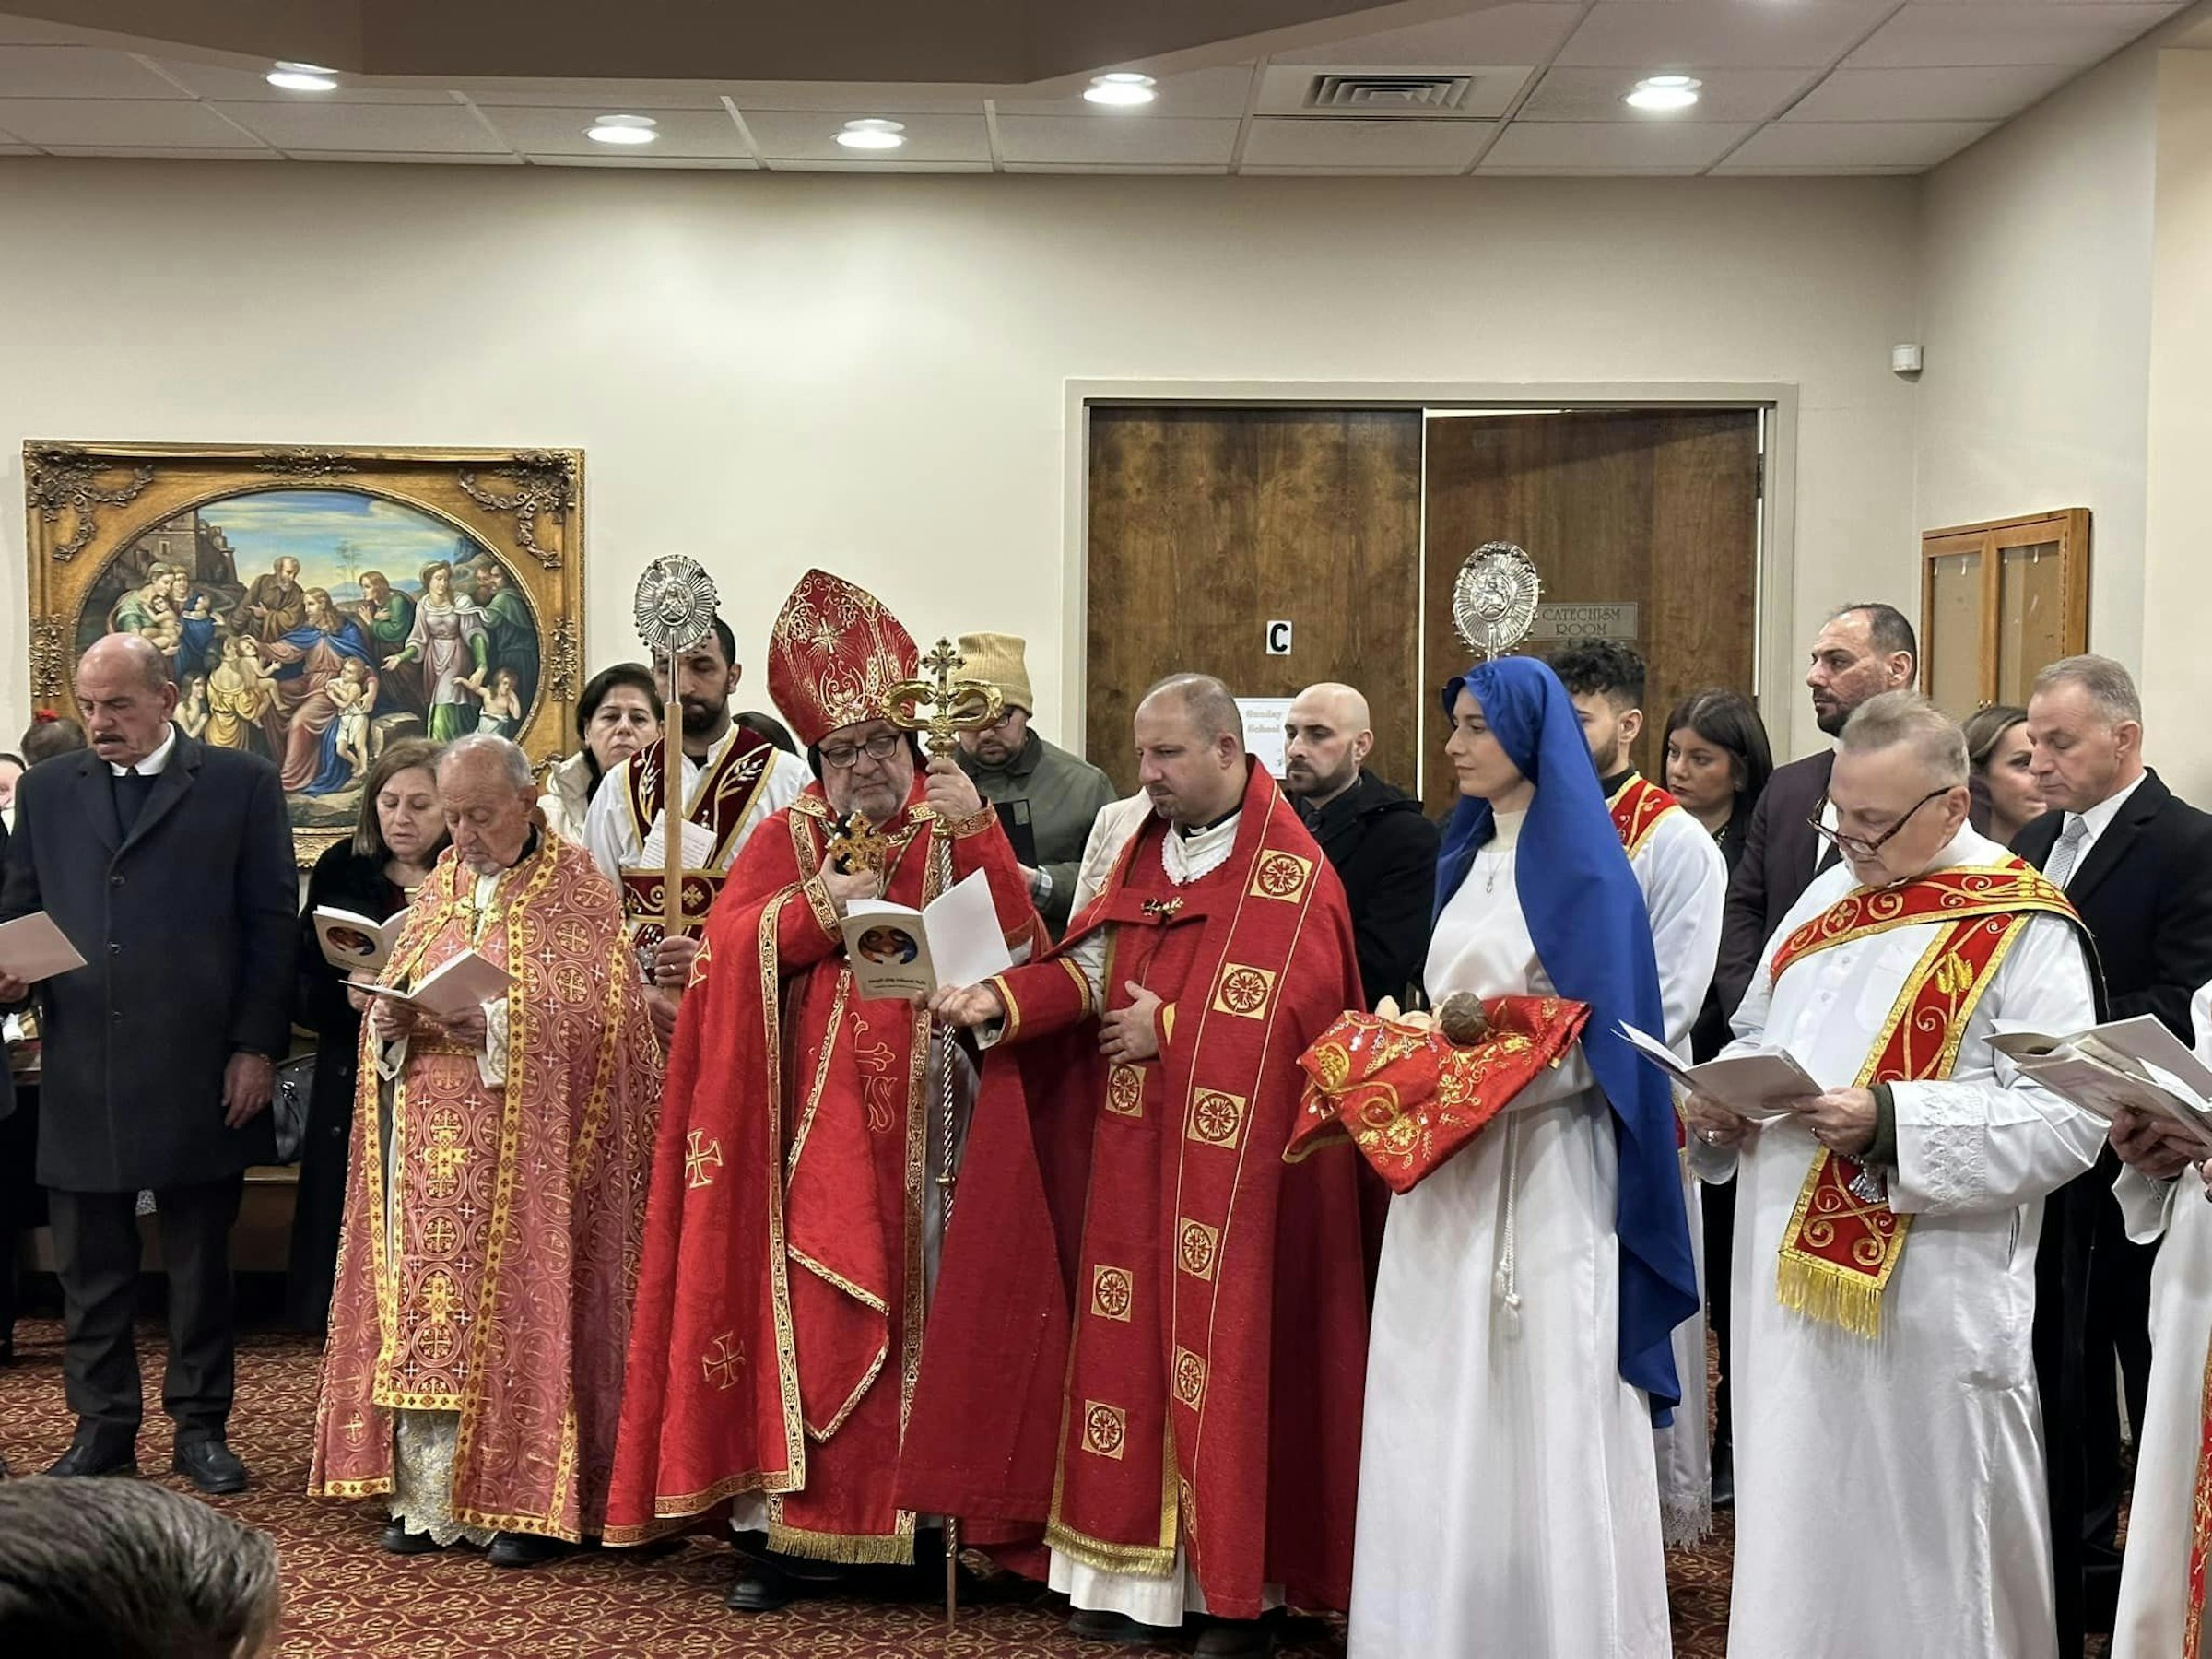 La eparquía Católica Siria traslada la catedral de Nueva Jersey al sureste  de Michigan - Detroit Catholic en Español